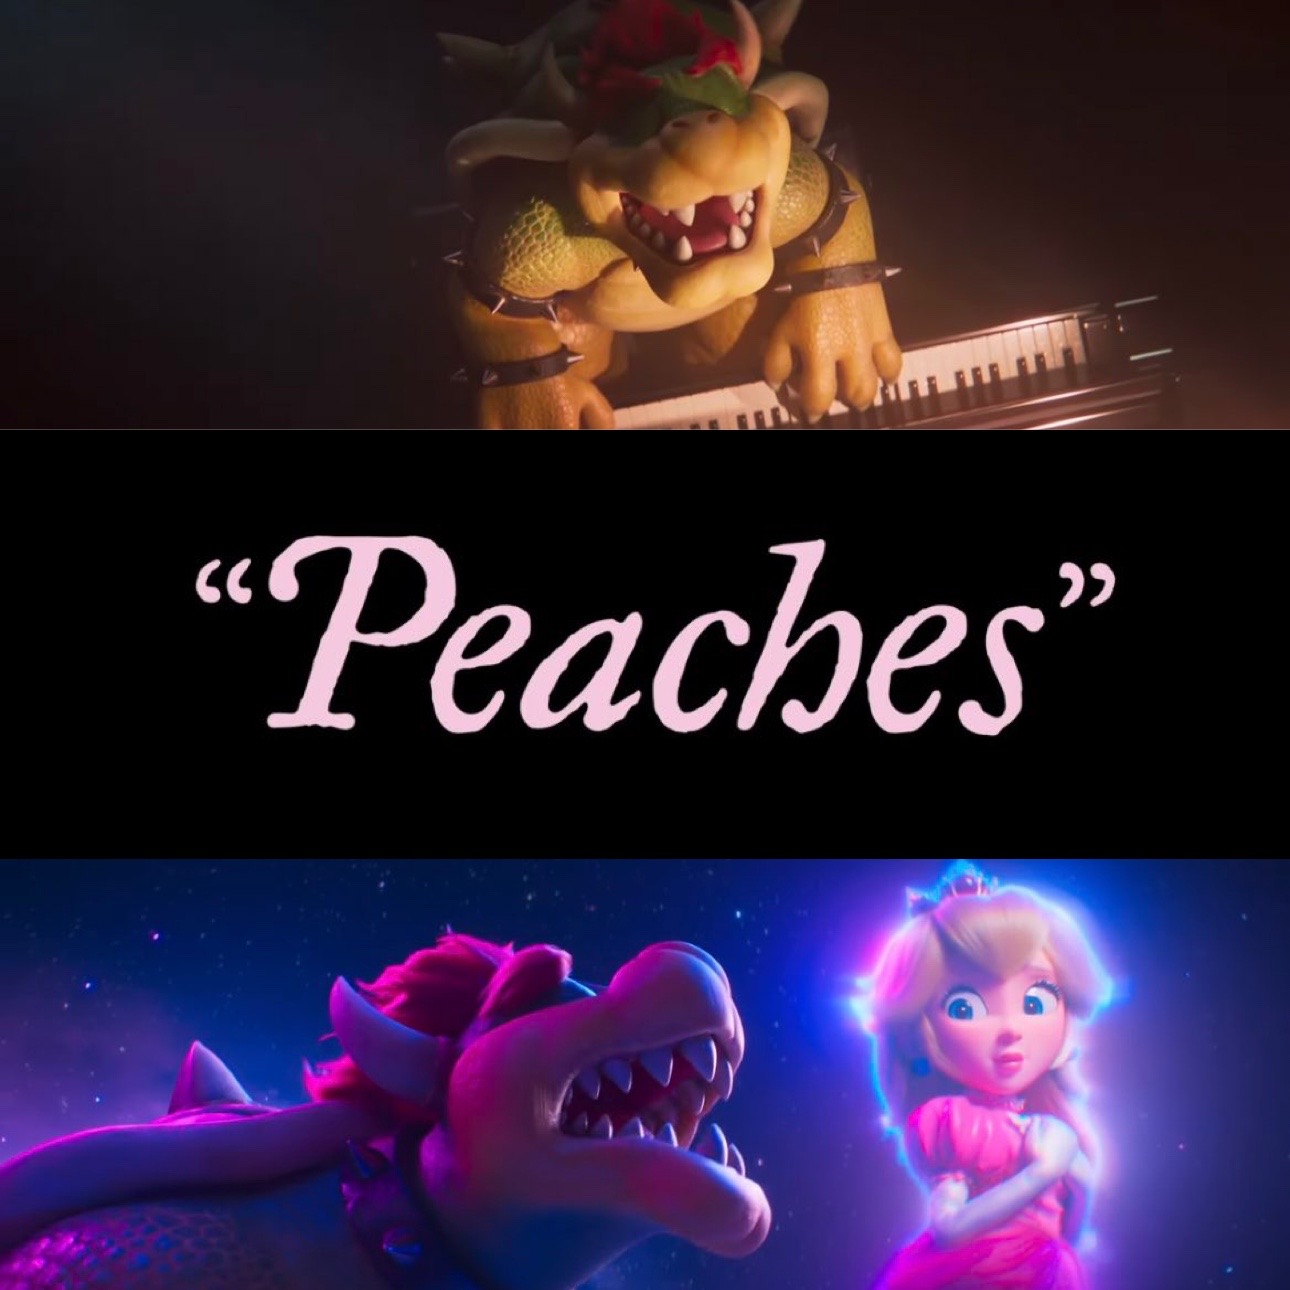 Peaches by Bowser (Super Mario Bros. Movie)